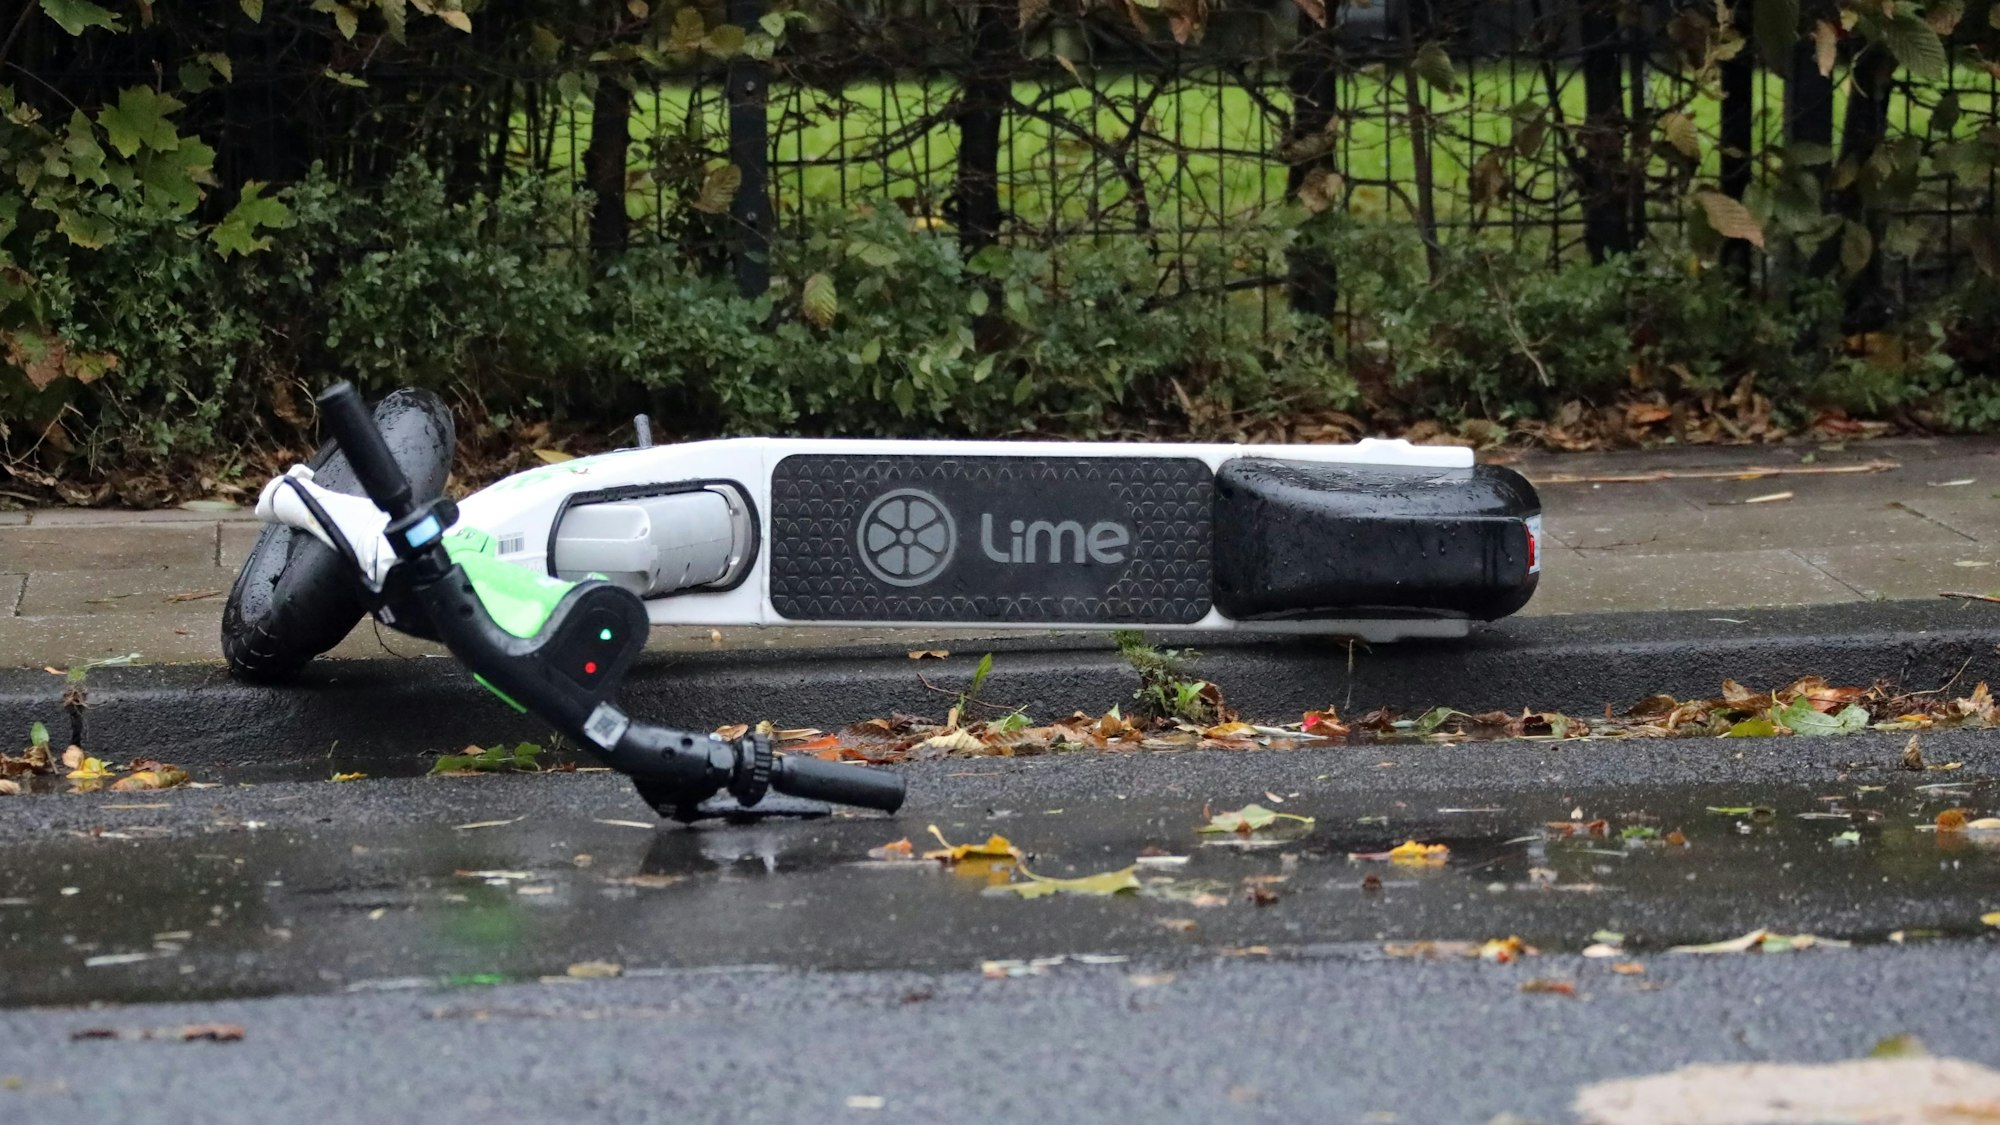 Zu sehen ist ein umgestürzter E-Scooter auf einem Bürgersteig.